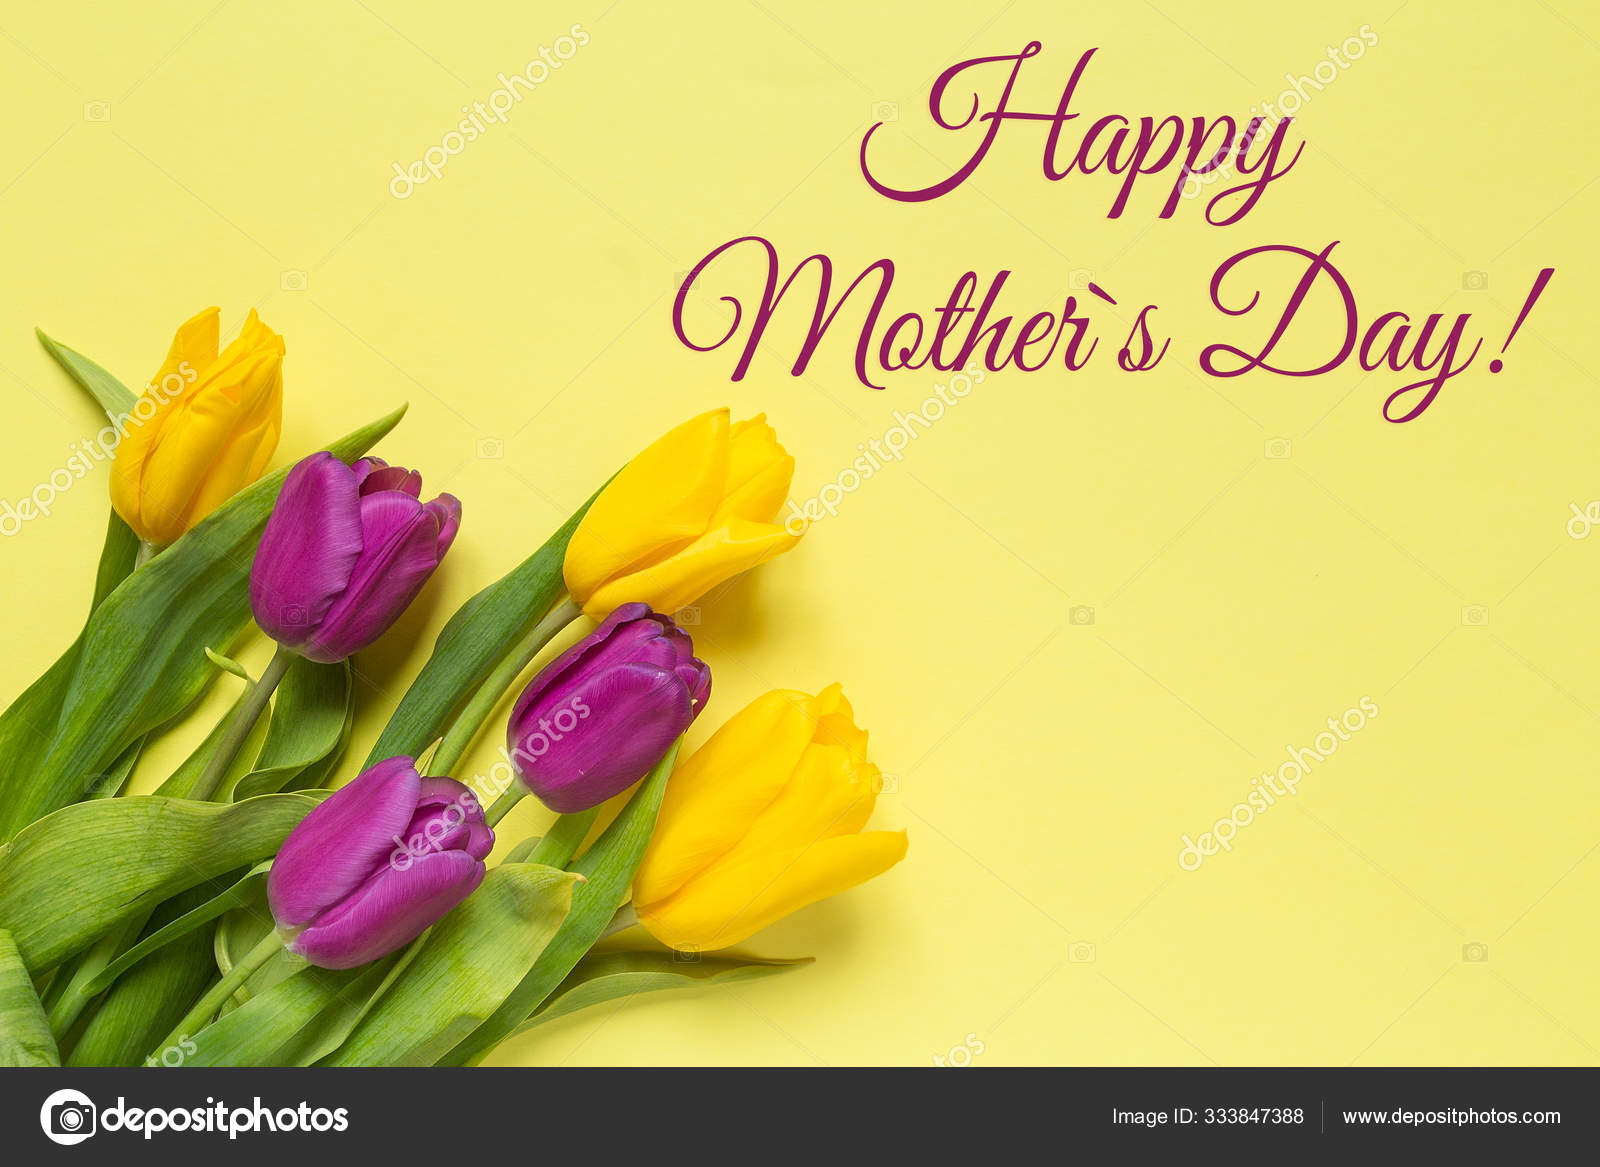 Hình ảnh bó hoa Tulip vàng tím Ngày của Mẹ sẽ là món quà tuyệt vời cho người mẹ của bạn trong dịp đặc biệt này. Tông màu vàng và tím kết hợp hoàn hảo, tạo ra sự uyển chuyển, tươi sáng giữa không khí rực rỡ những bông hoa.